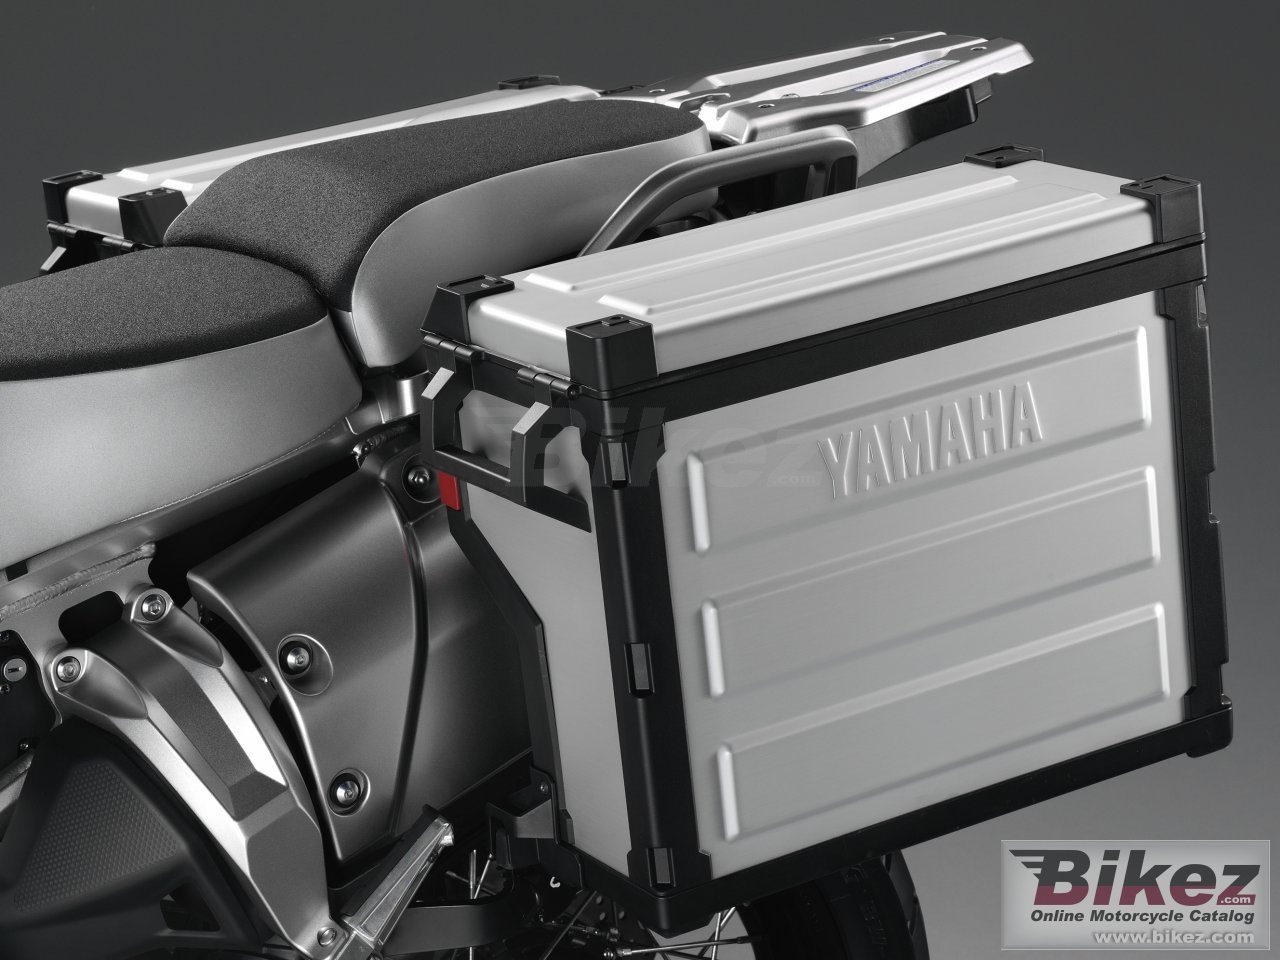 Yamaha XT1200Z Super Tenere